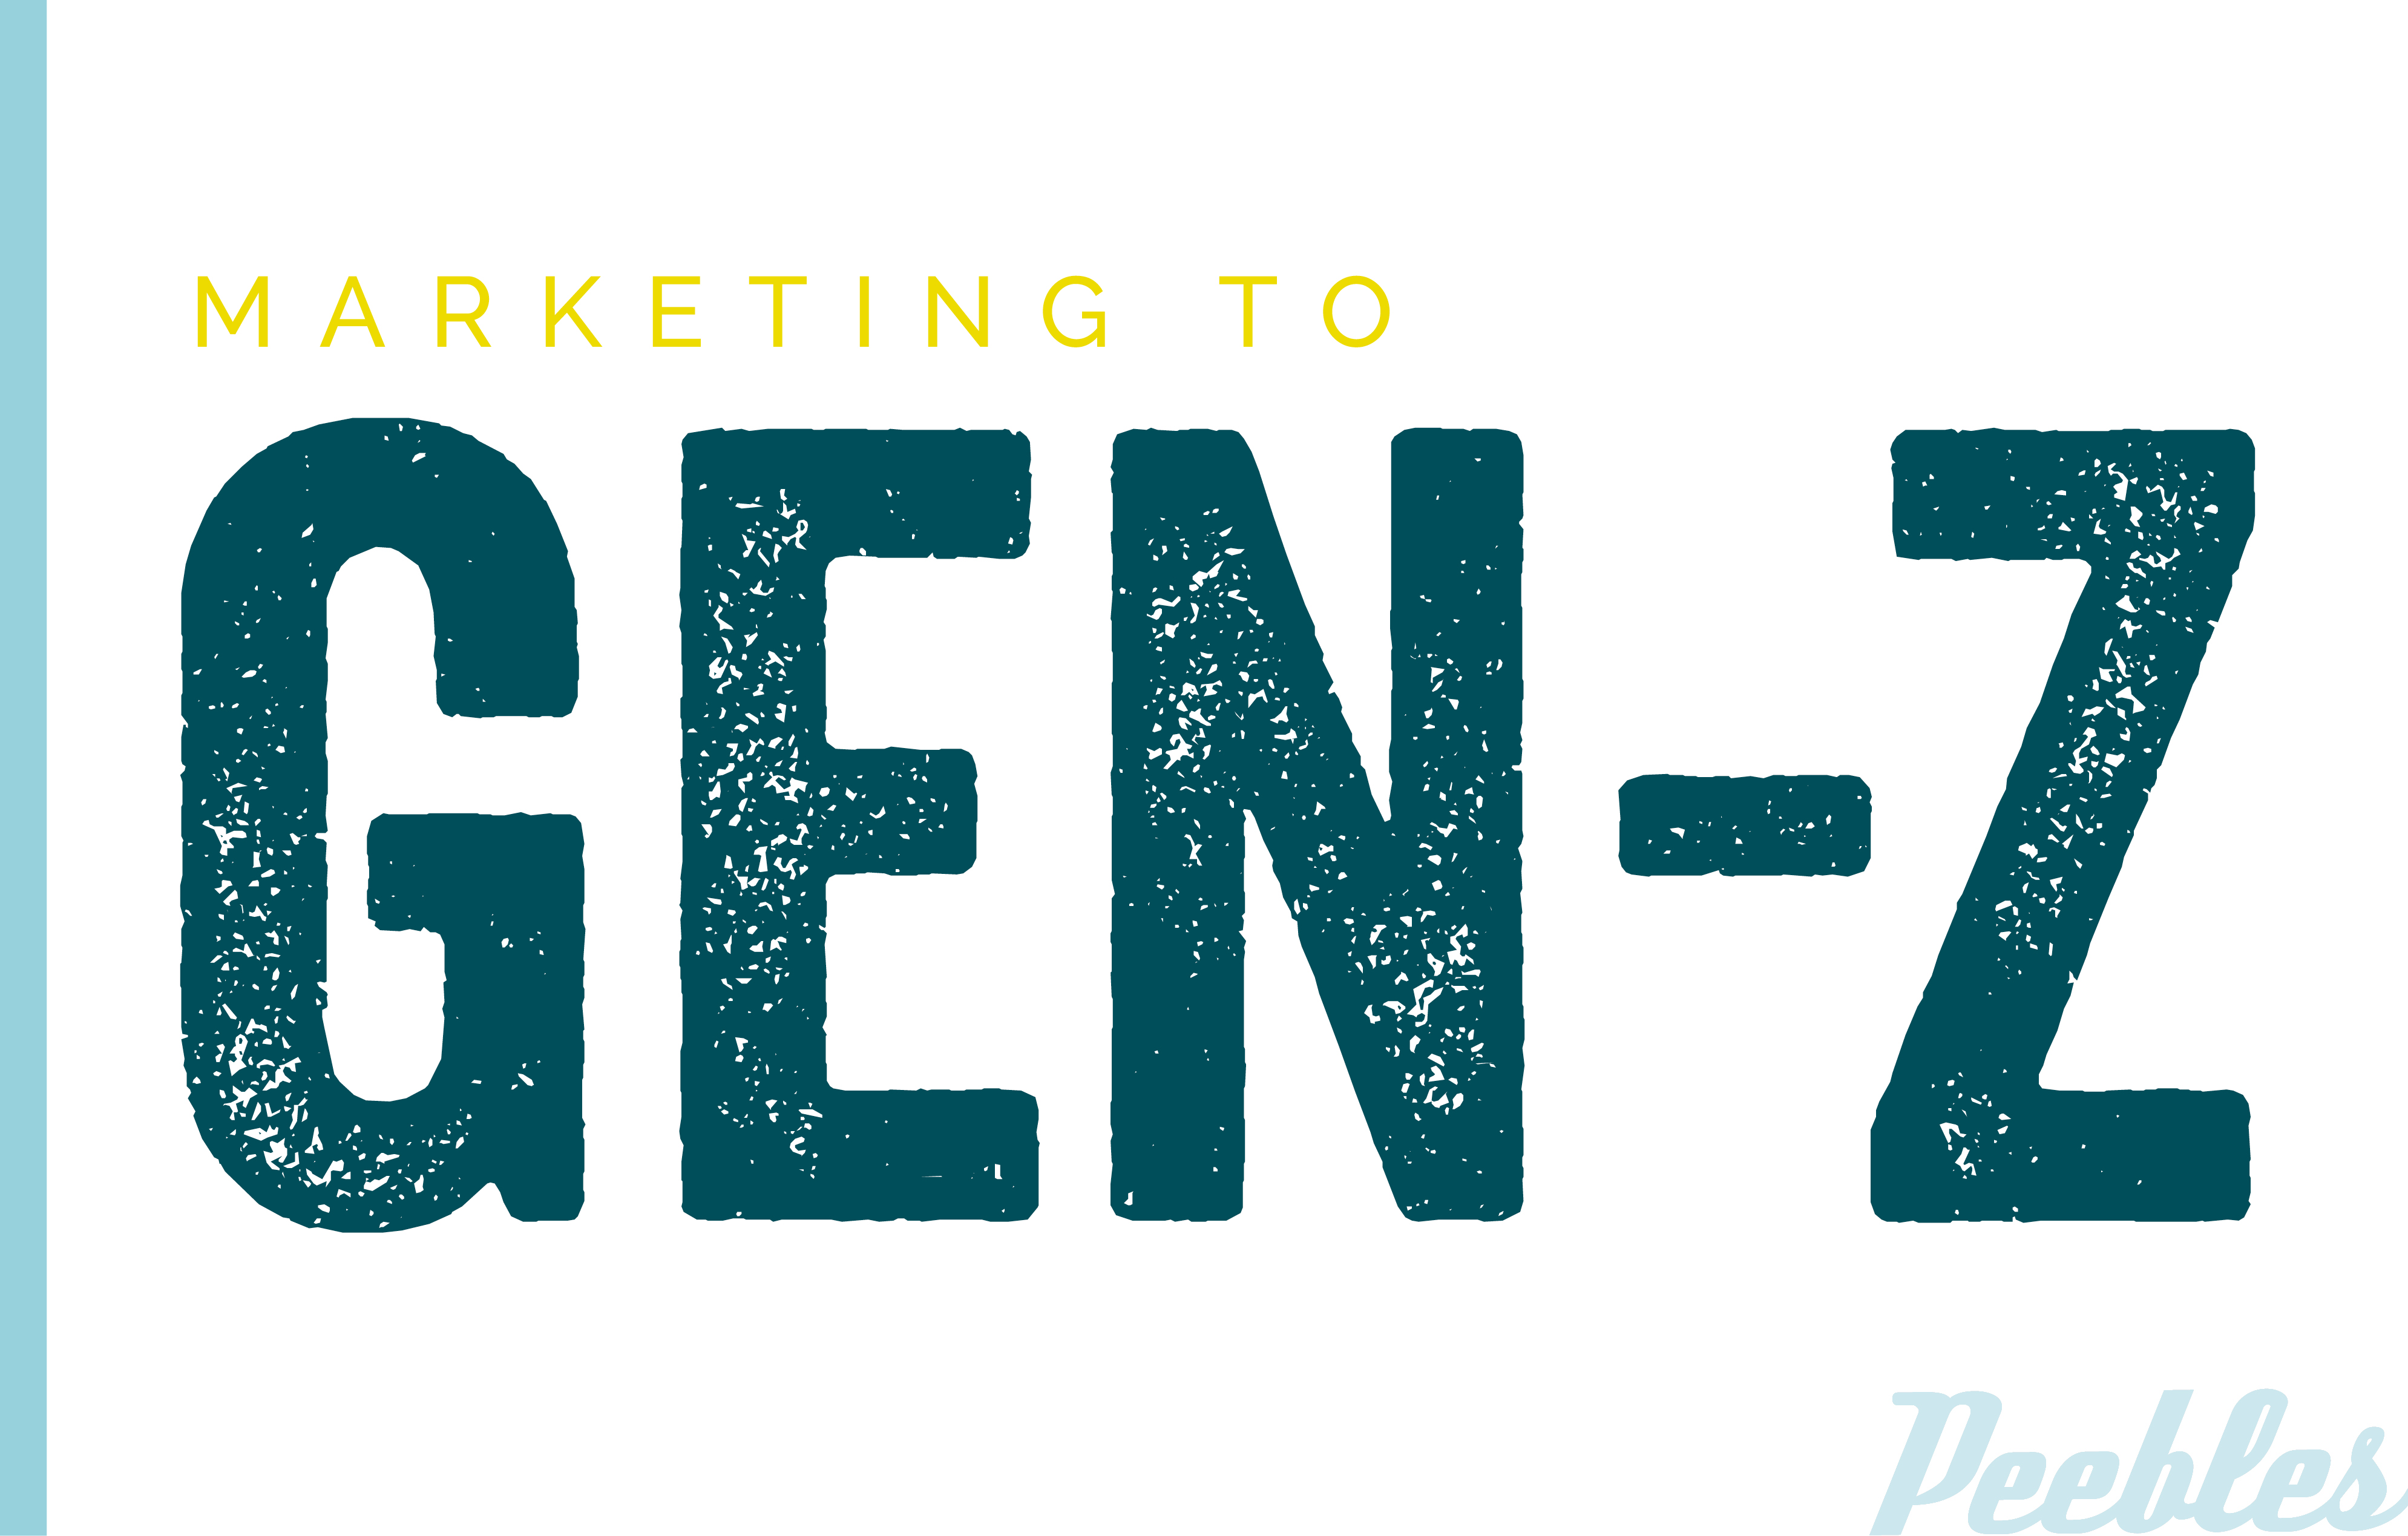 Marketing to Generation Z